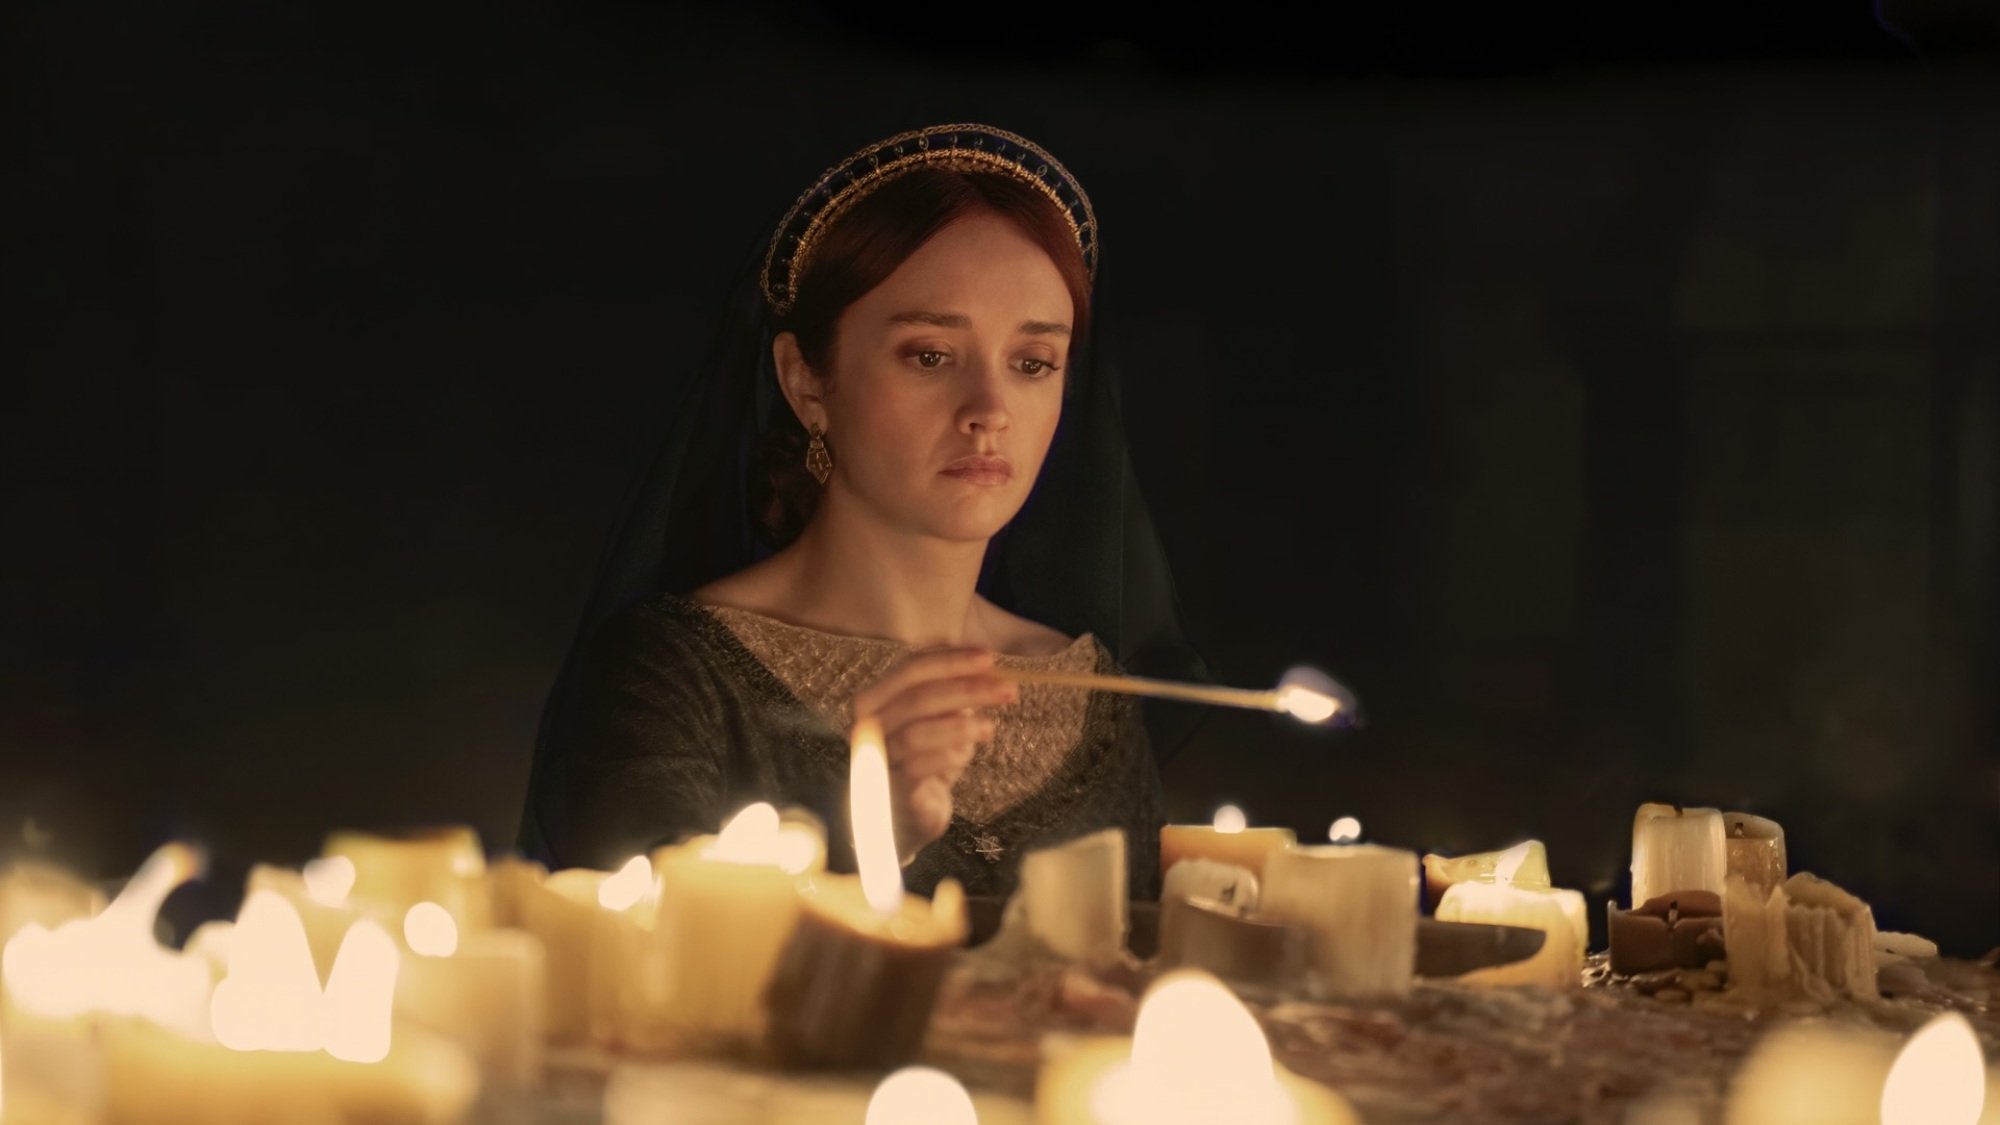 Alicent de "Maison du Dragon" allume des bougies sur un autel, vêtue d'une robe verte et d'une coiffe voilée noire.